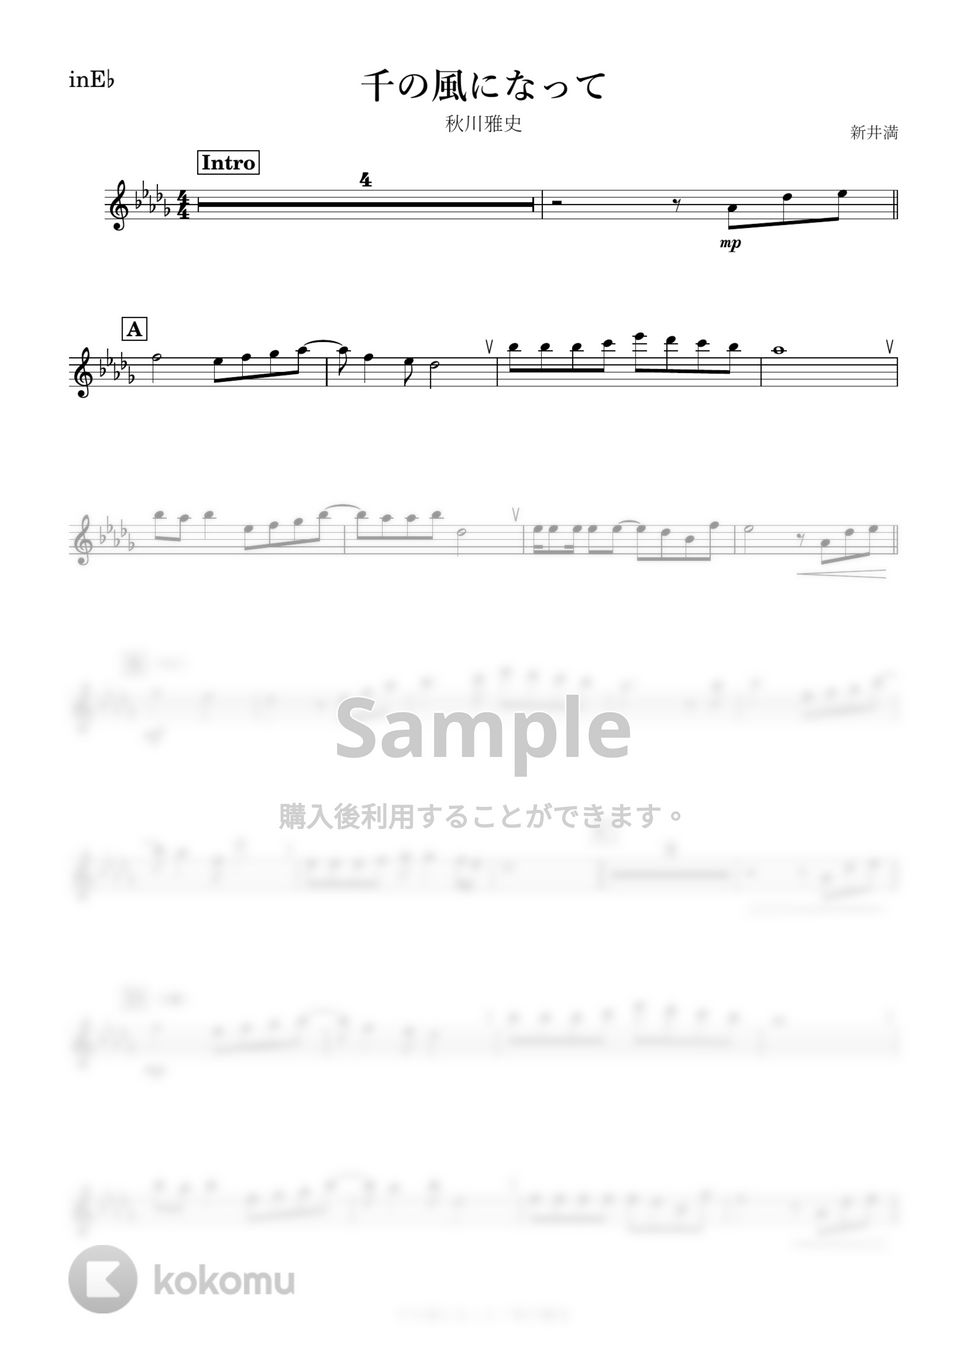 秋川雅史 - 千の風になって (E♭) by kanamusic